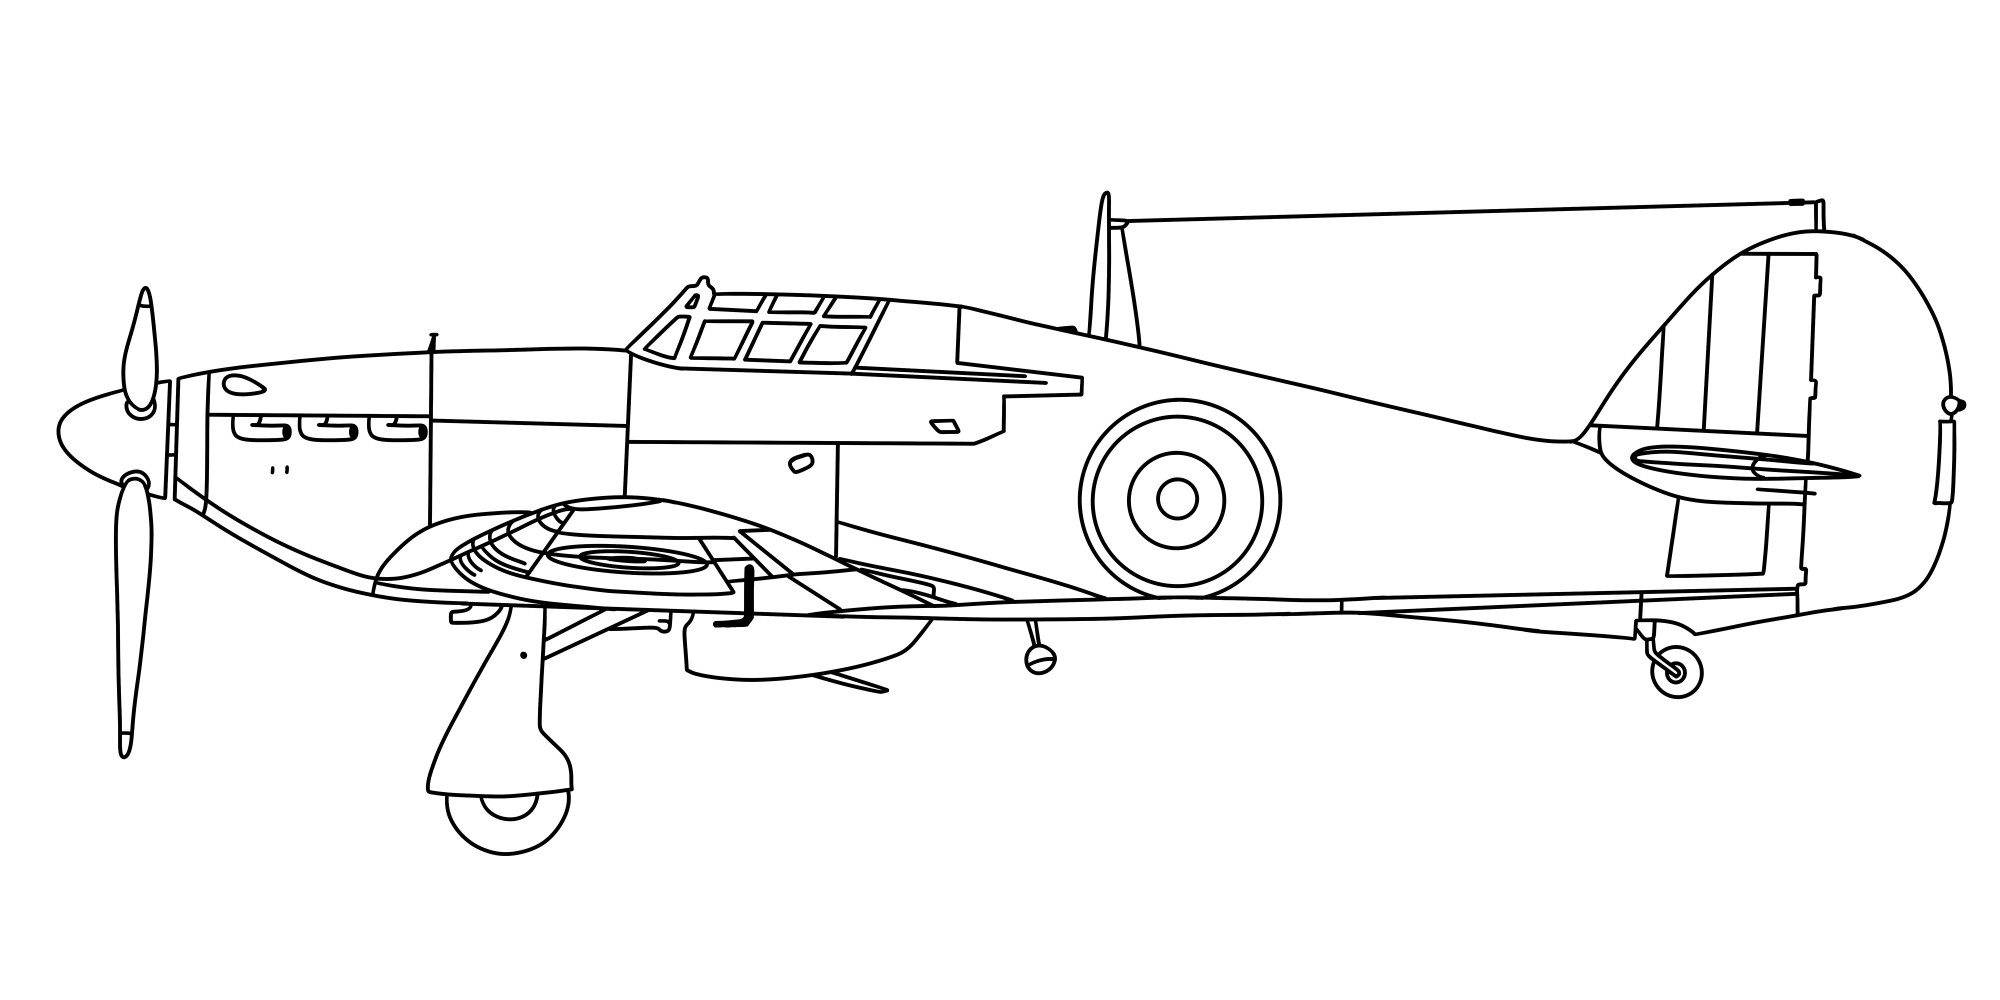 Раскраска для детей: самолет «Боевая эскадрилья»